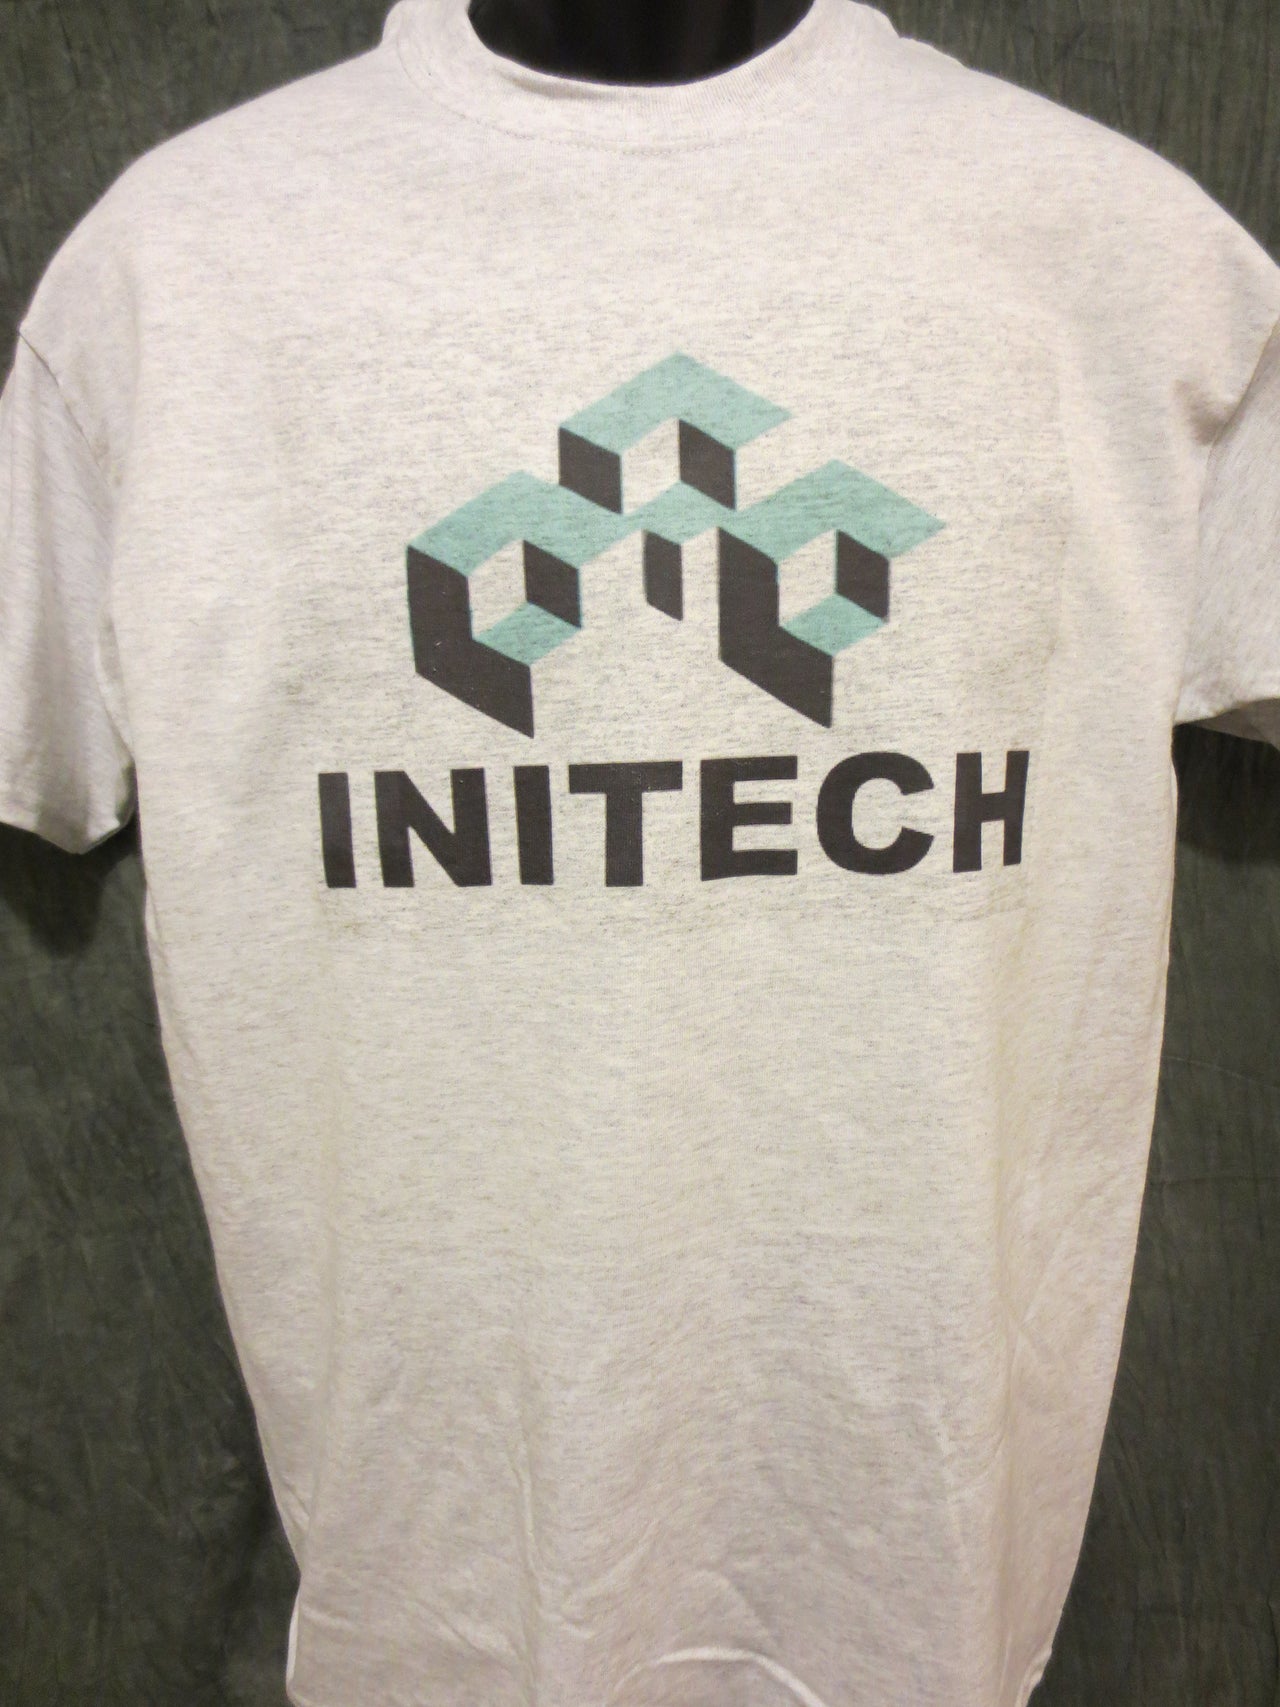 Office Space Initech Logo Tshirt - TshirtNow.net - 5